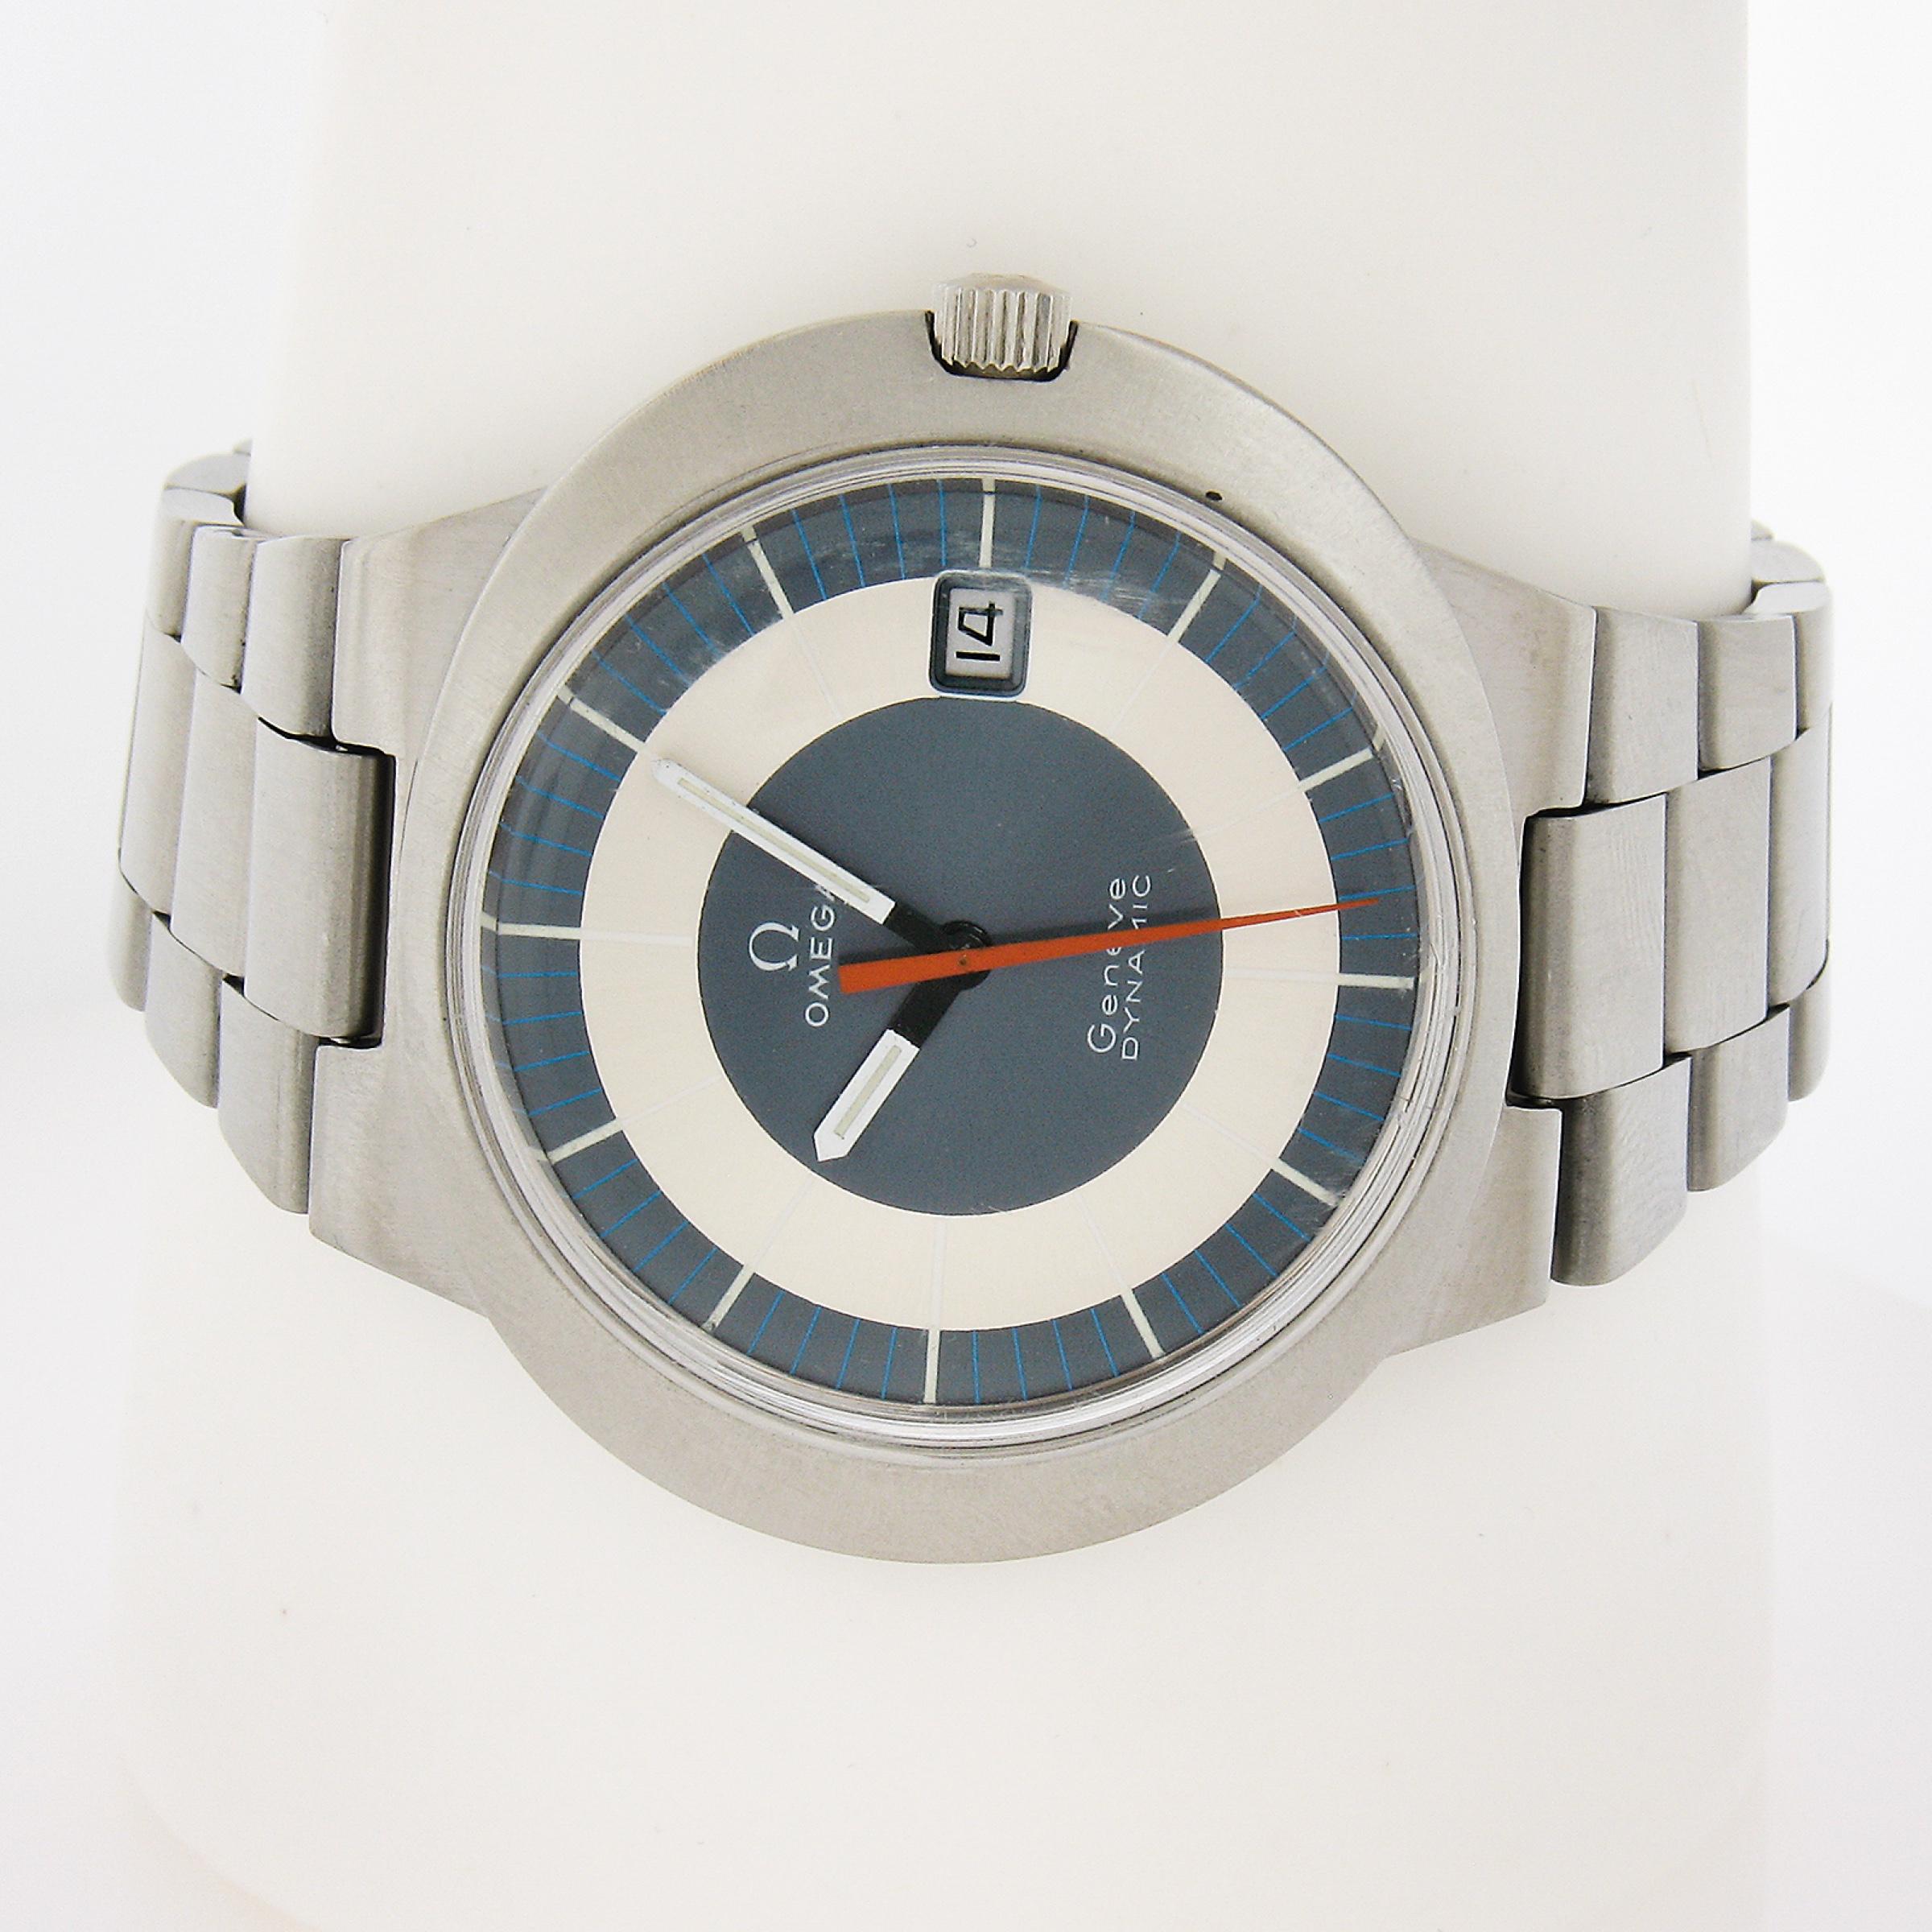 Horlogerie : Omega Watch Co.
Mouvement : Omega Dynamic - Mécanique Automatique Calibre 565 - Fabriqué en Suisse
Matériau du boîtier : Acier inoxydable
Type de boîtier : Unishell (s'ouvre du côté du cadran)
Poids brut :	88 grammes (boîtier, mouvement